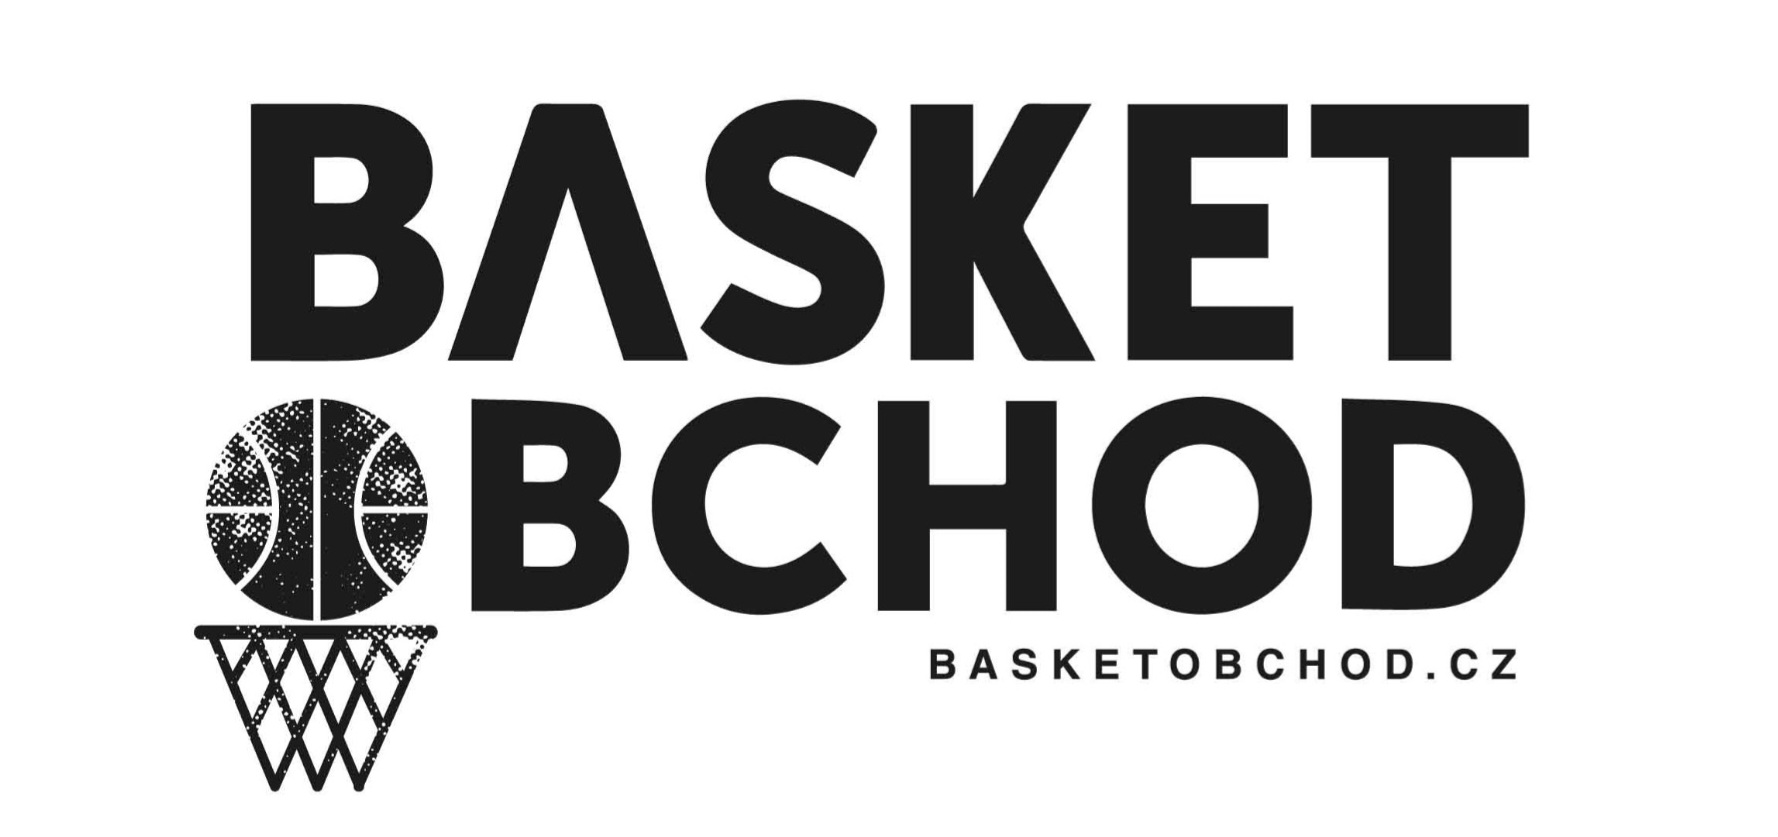 Basket-obchod.cz